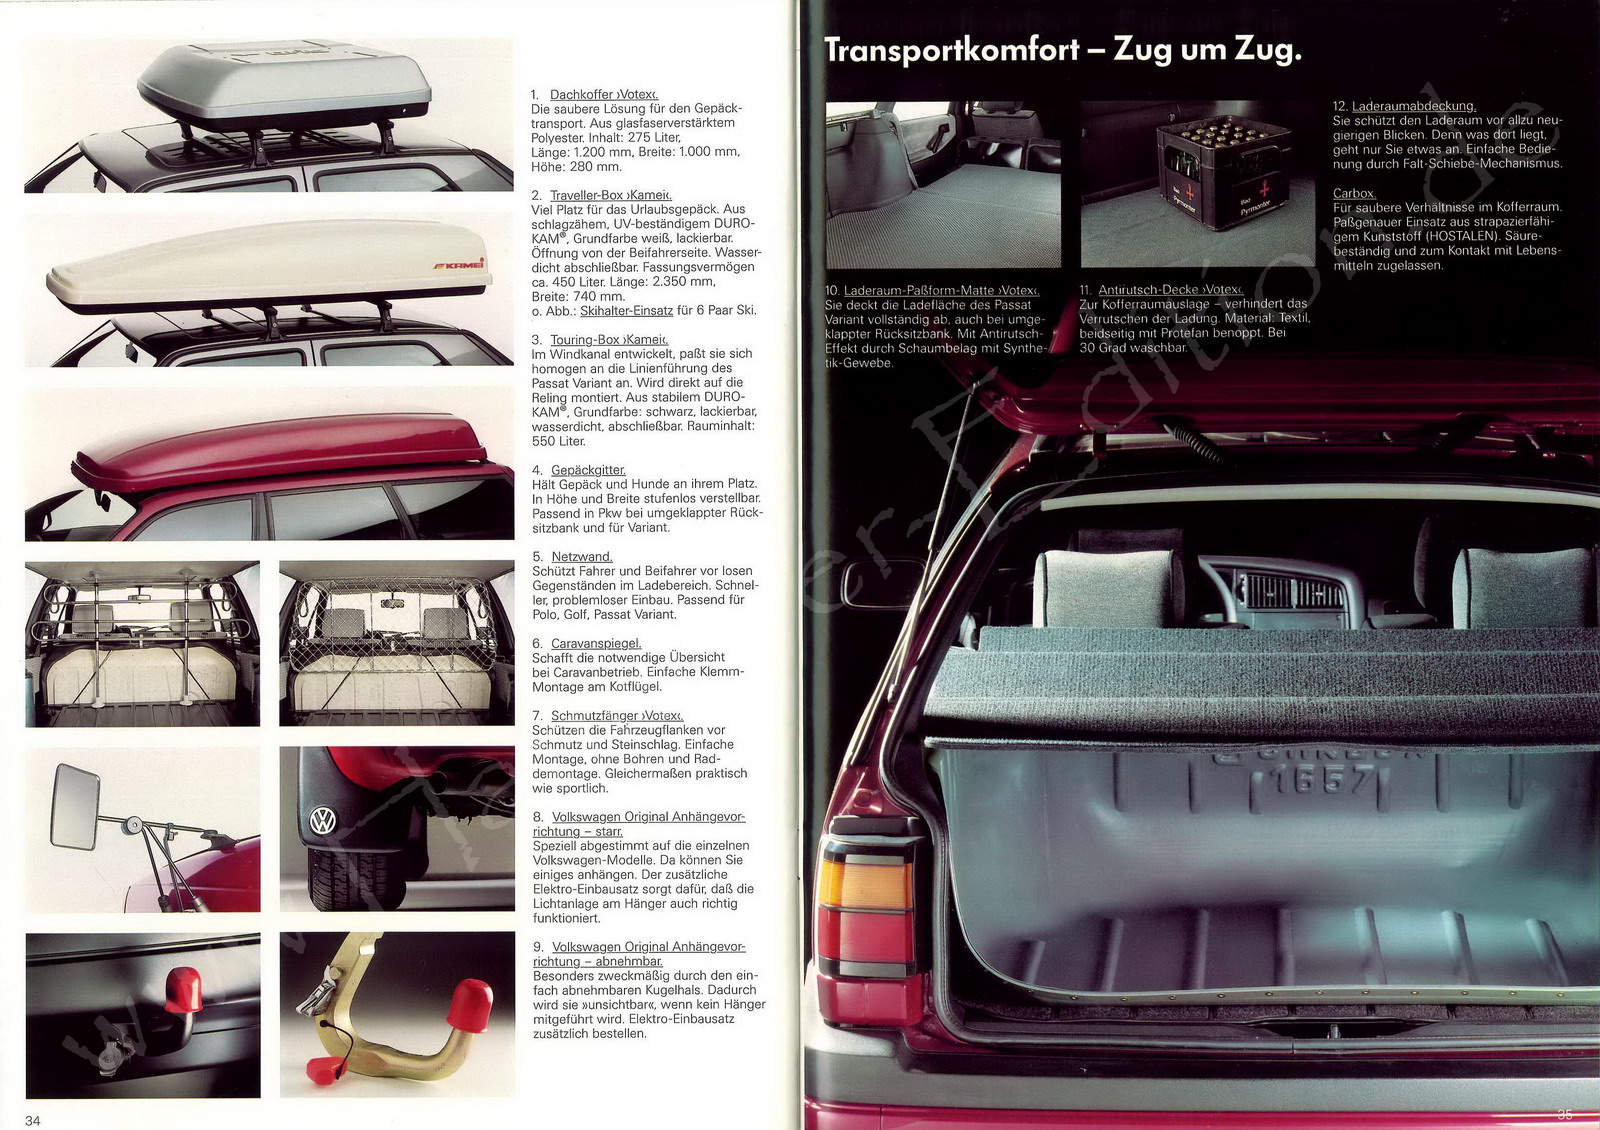 VW Golf Zubehör 9/86 – Autoprospekte-Sammlung